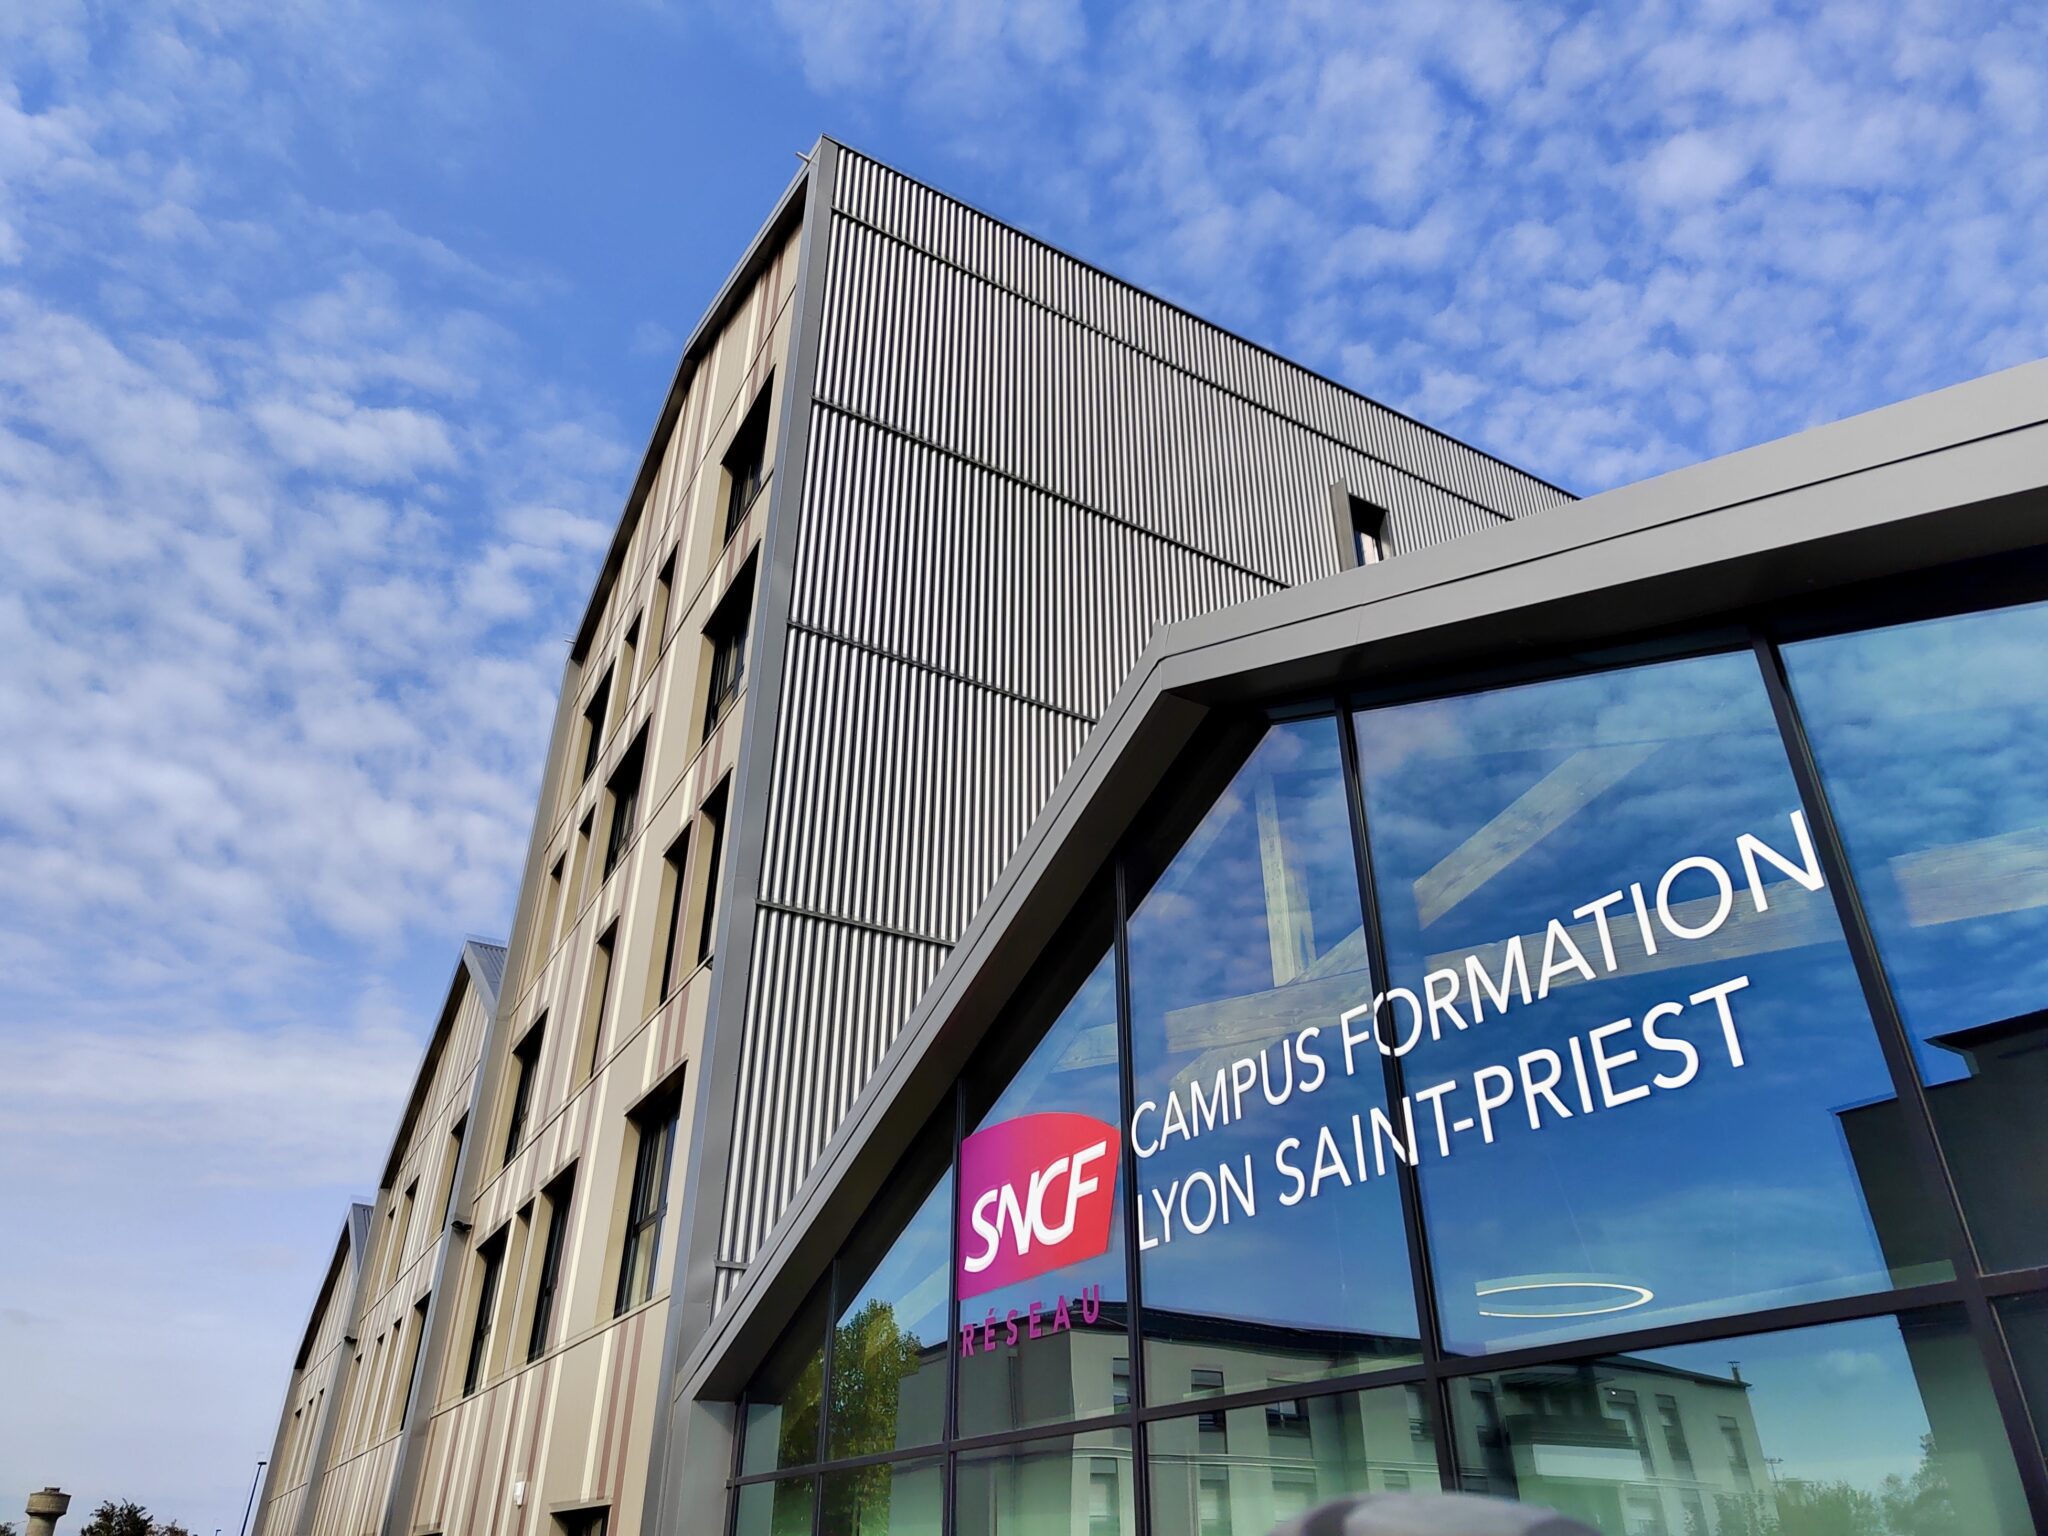 SNCF Réseau s’est doté d’un troisième campus nouvelle génération.